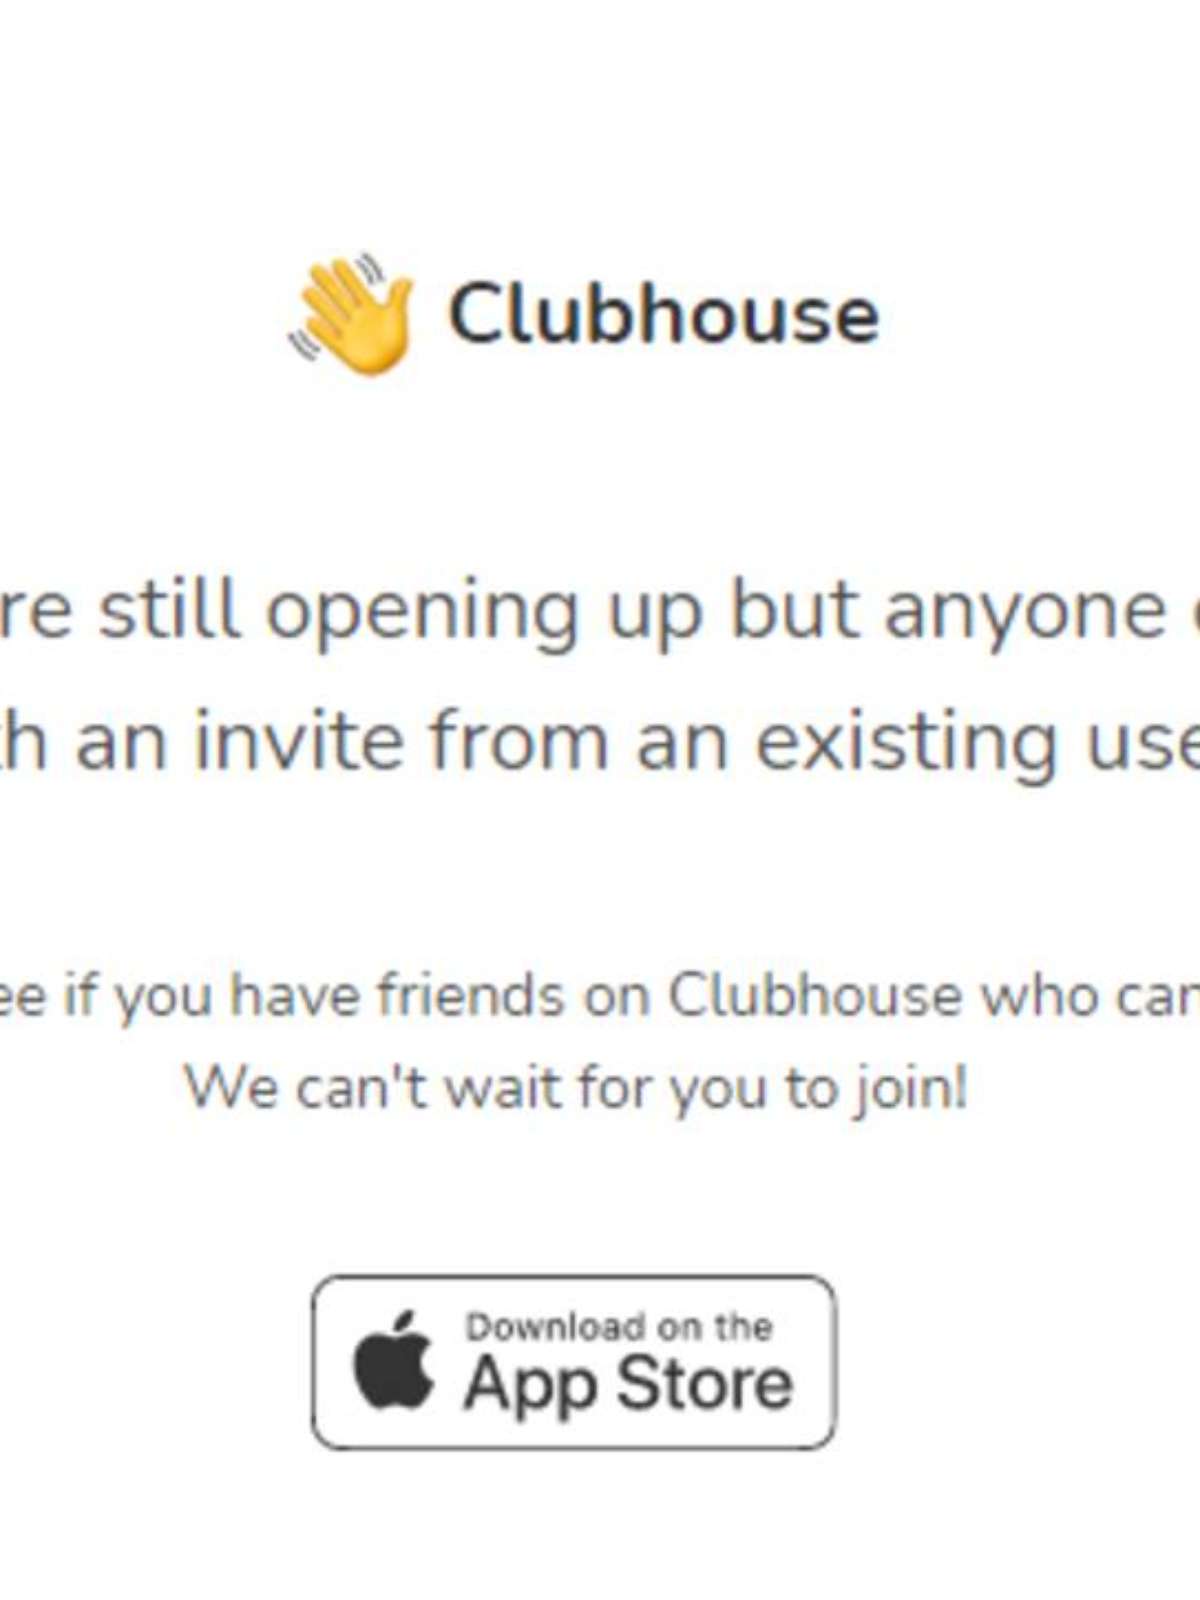 Clubhouse ganha versão web em novo teste - TecMundo